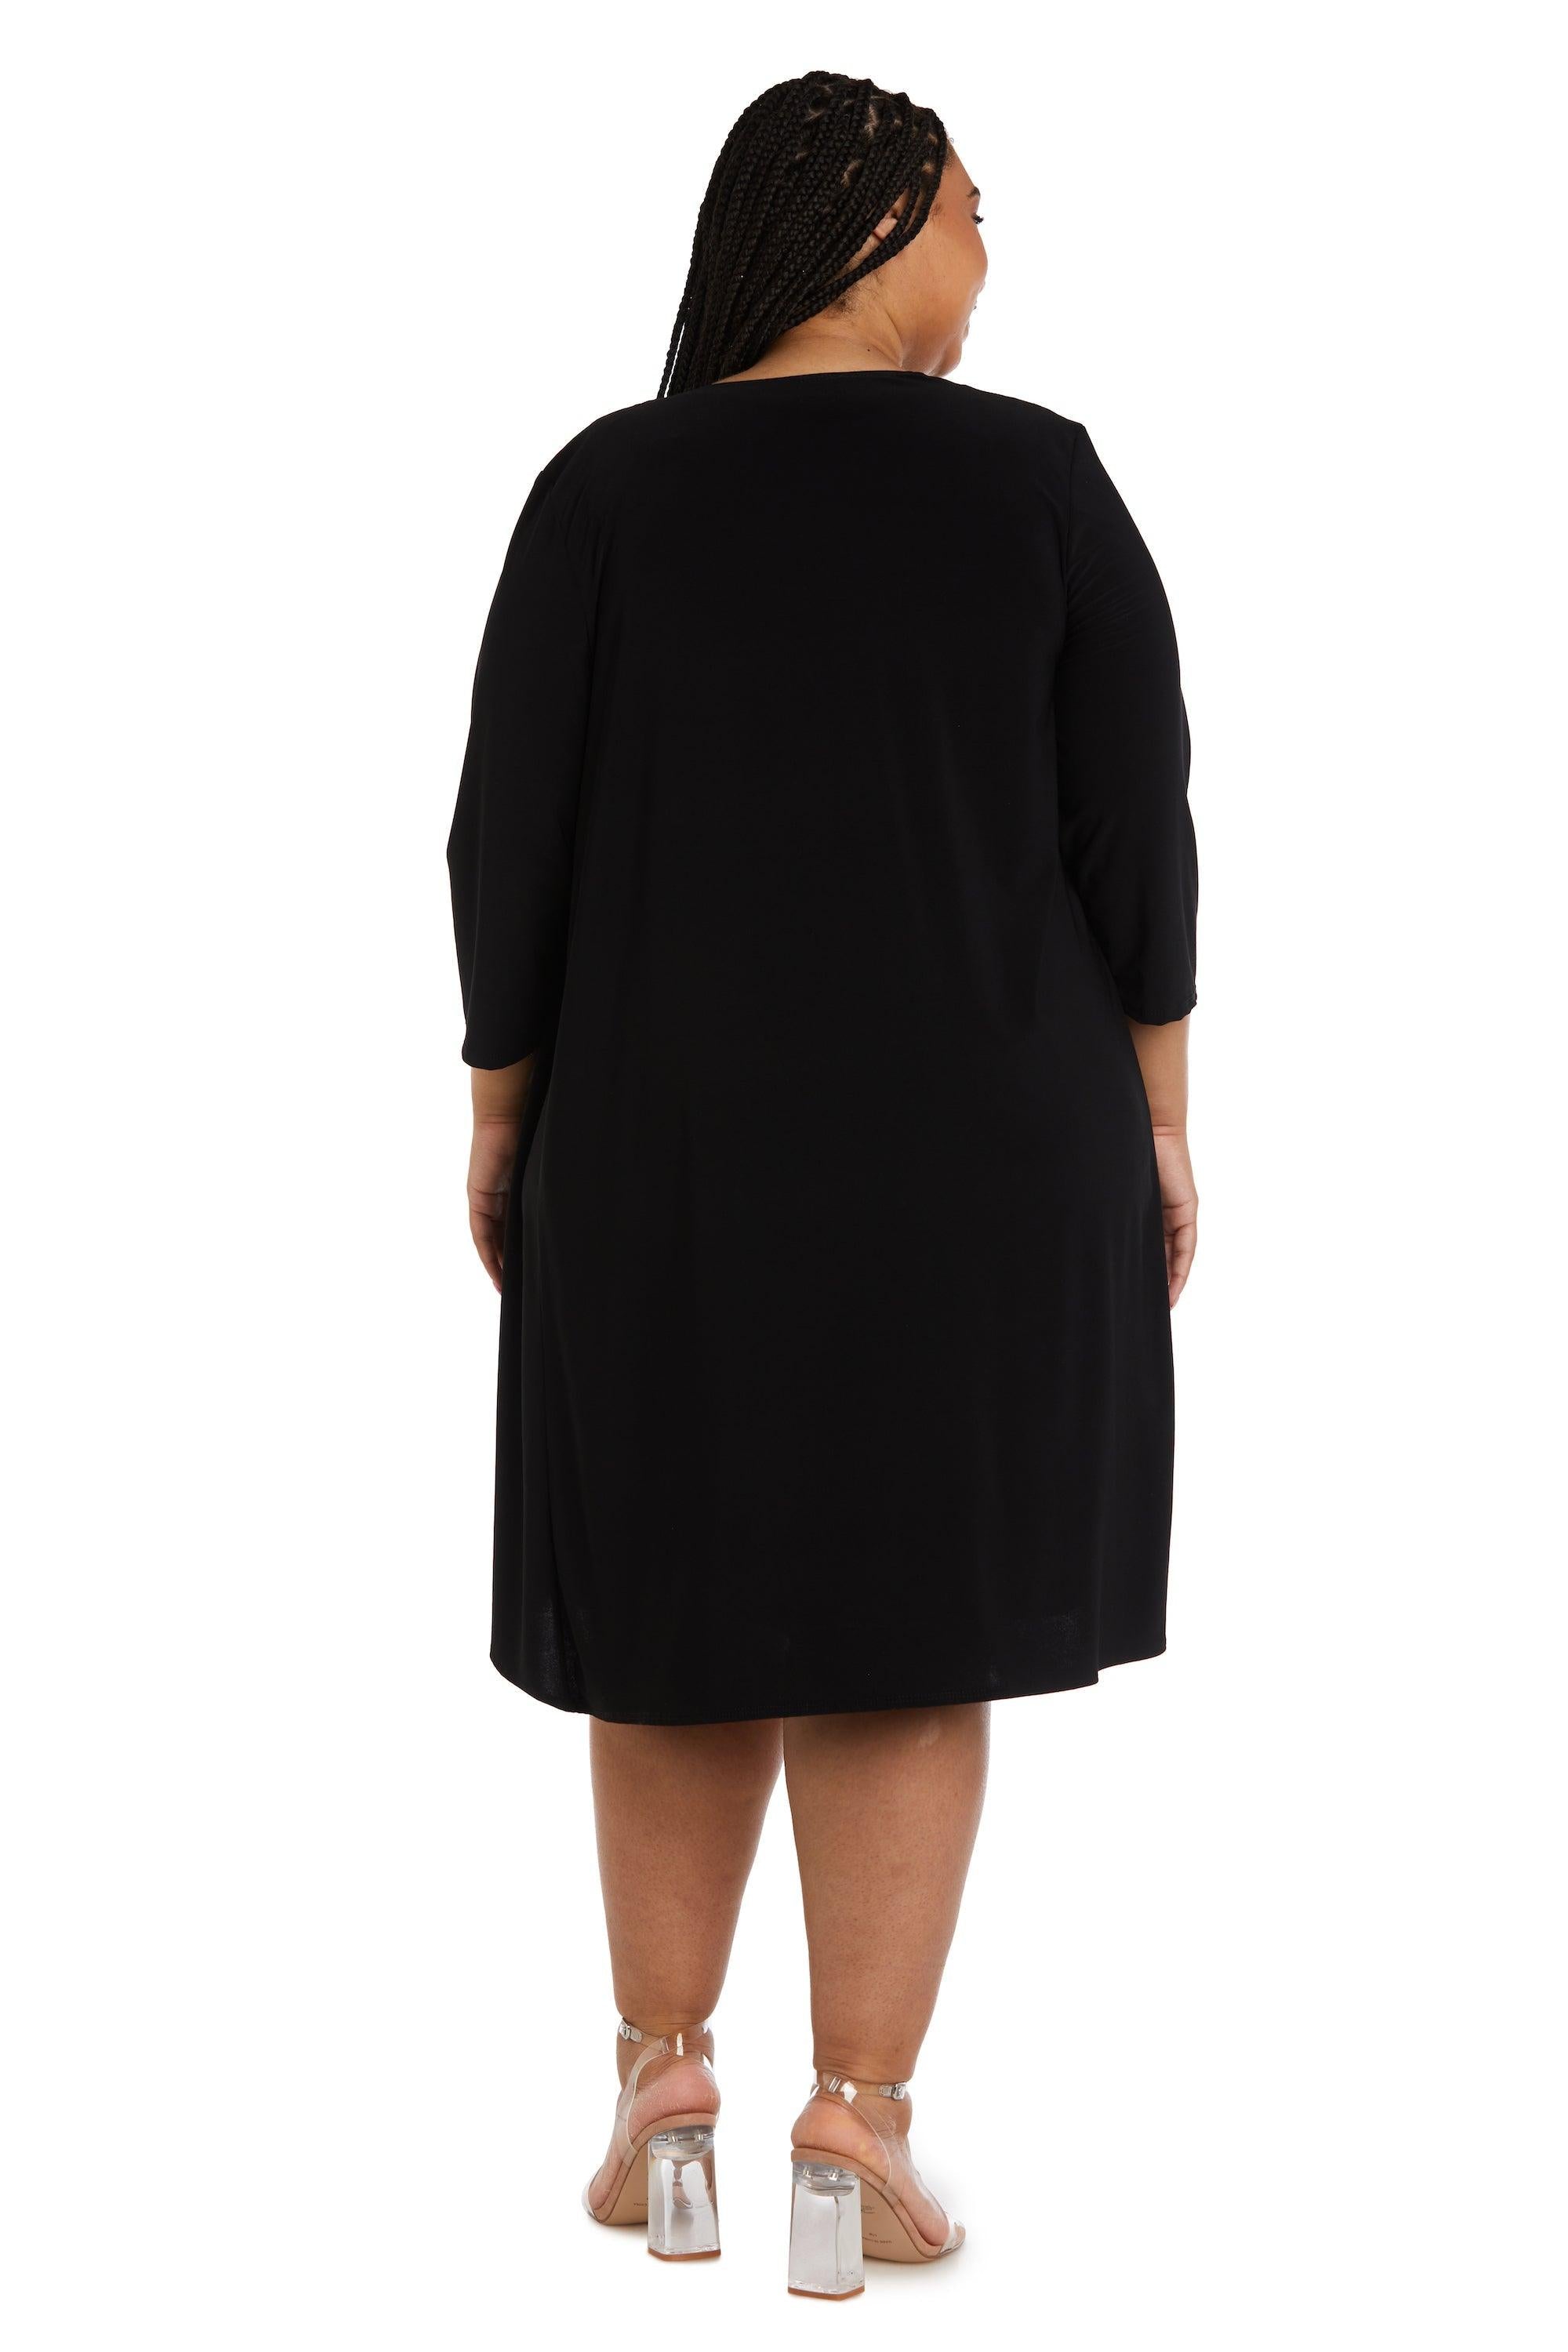 R&M Richards Short Plus Size jacket Dress 9297W - The Dress Outlet